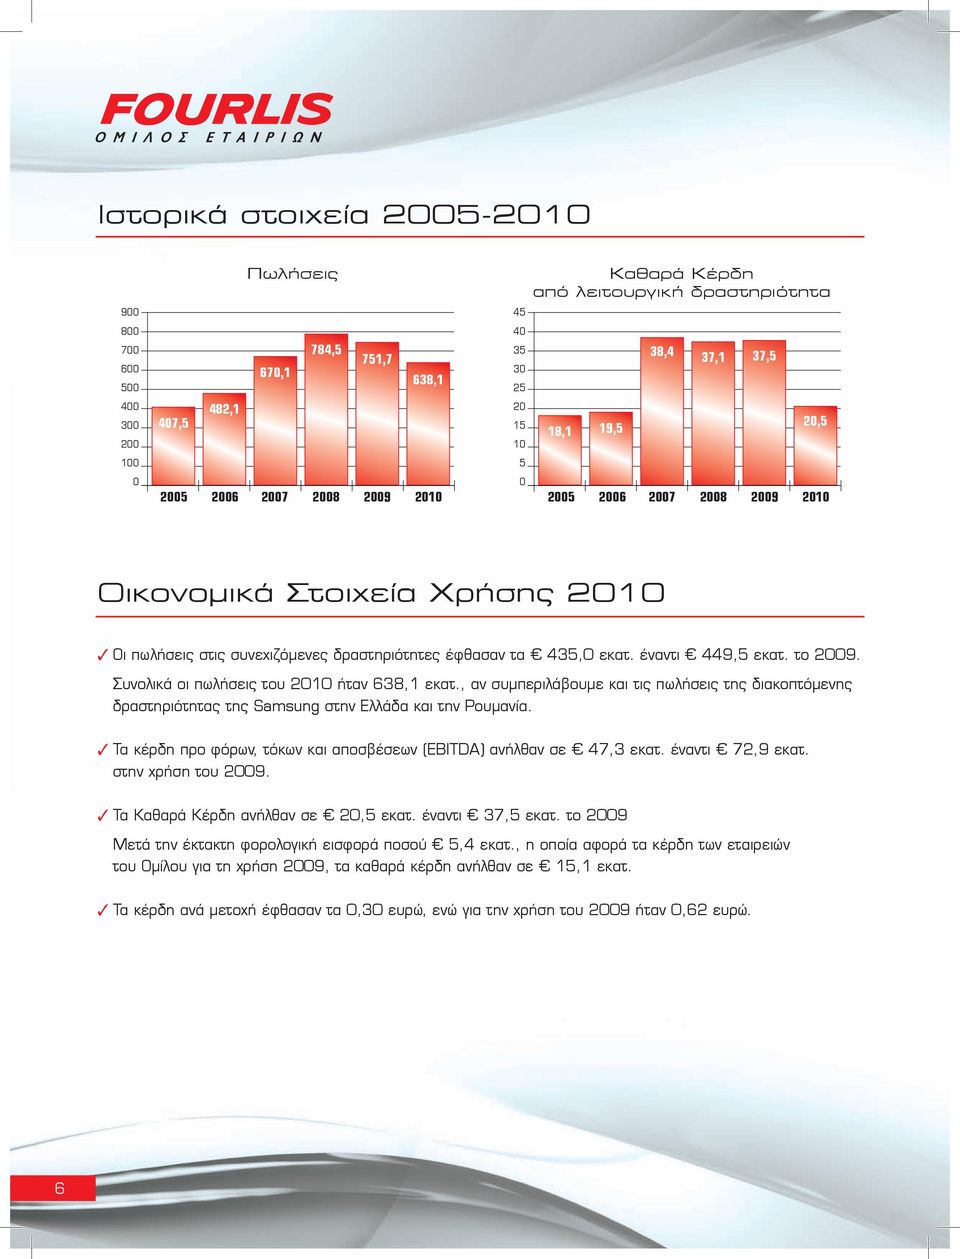 το 2009. Συνολικά οι πωλήσεις του 2010 ήταν 638,1 εκατ., αν συμπεριλάβουμε και τις πωλήσεις της διακοπτόμενης δραστηριότητας της Samsung στην Ελλάδα και την Ρουμανία.